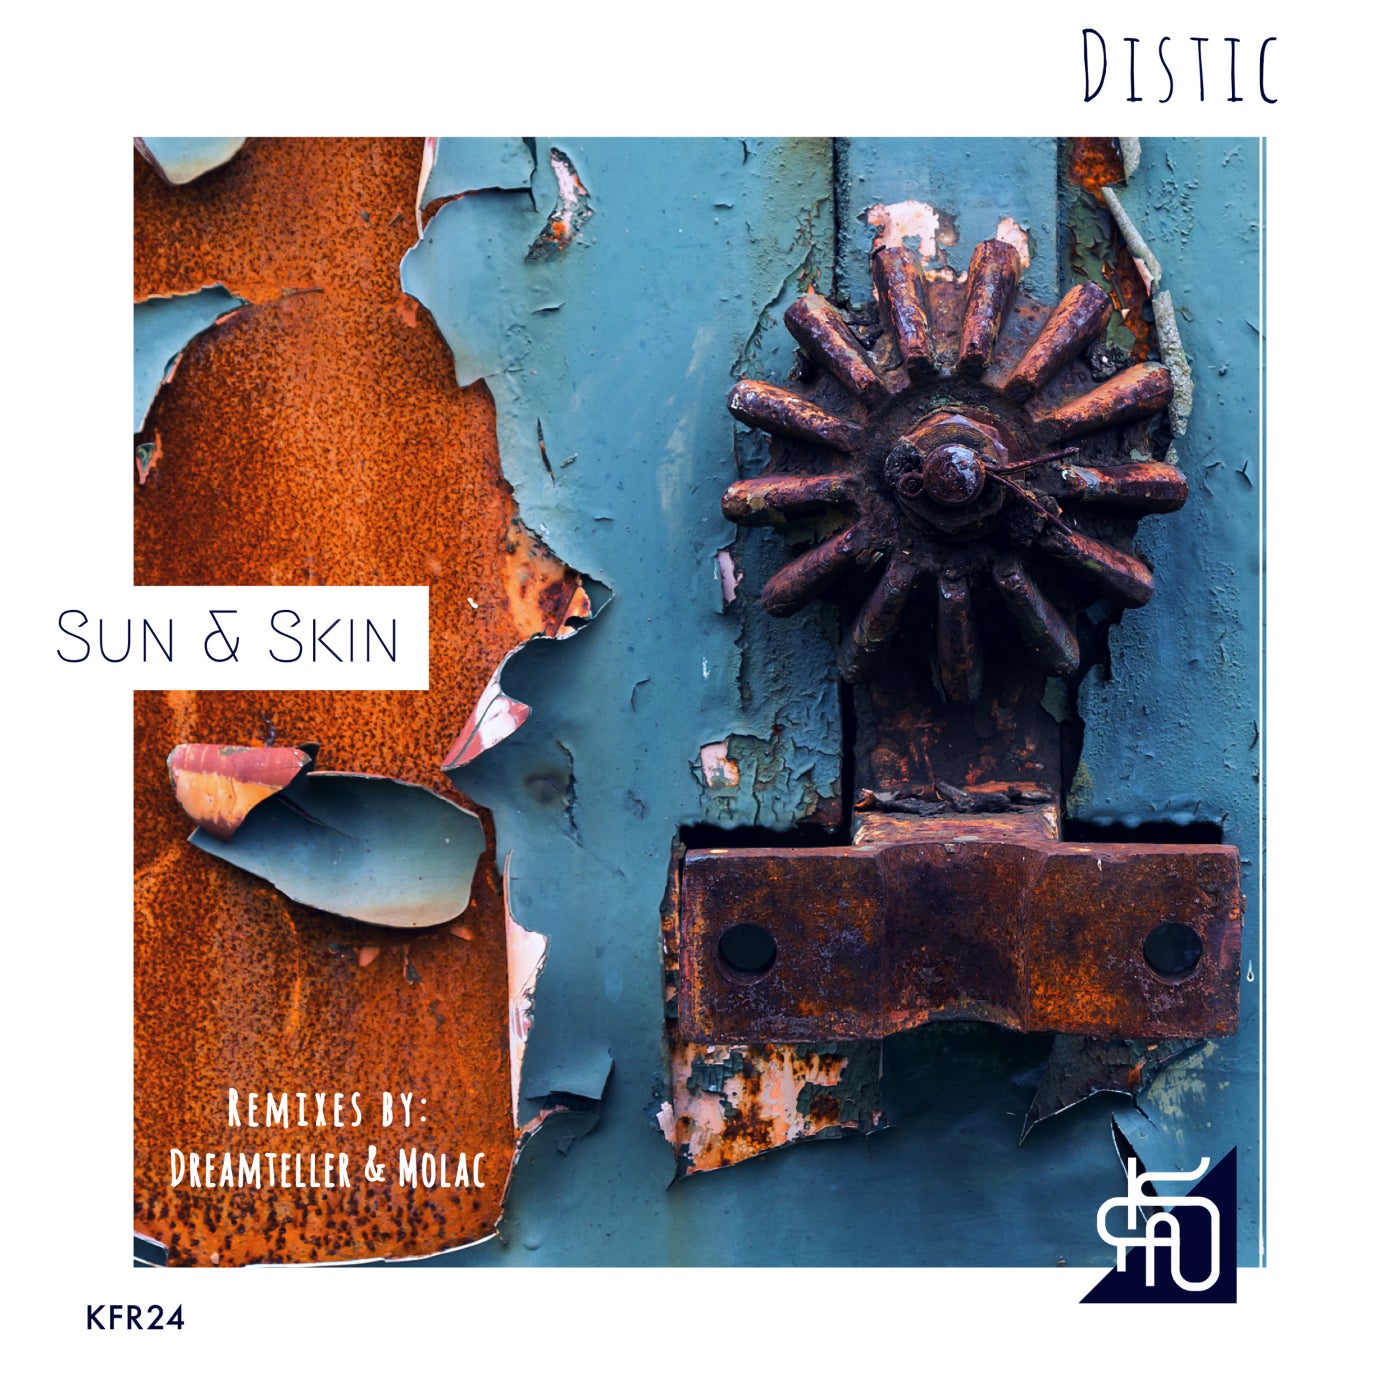 Sun & Skin